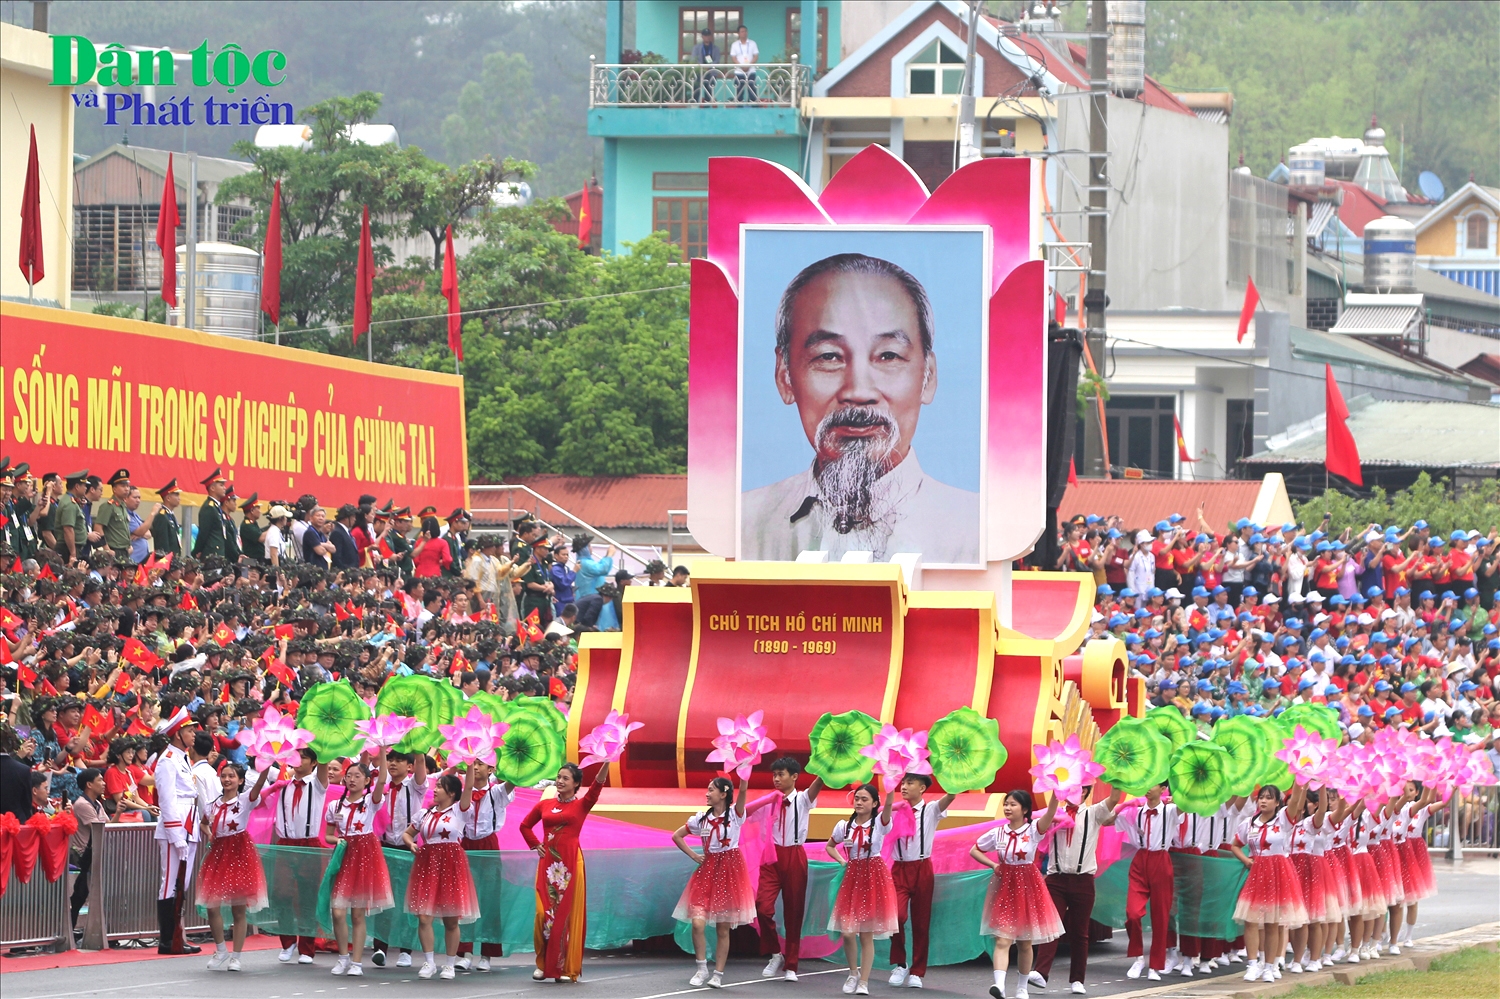 Xe rước ảnh Chủ tịch Hồ Chí Minh tại Lễ diễu binh, diễu hành. Chủ tịch Hồ Chí Minh đã mở đường, chỉ lối và trực tiếp lãnh đạo cách mạng Việt Nam đi từ thắng lợi này đến thắng lợi khác, trong đó có chiến thắng lịch sử Điện Biên Phủ